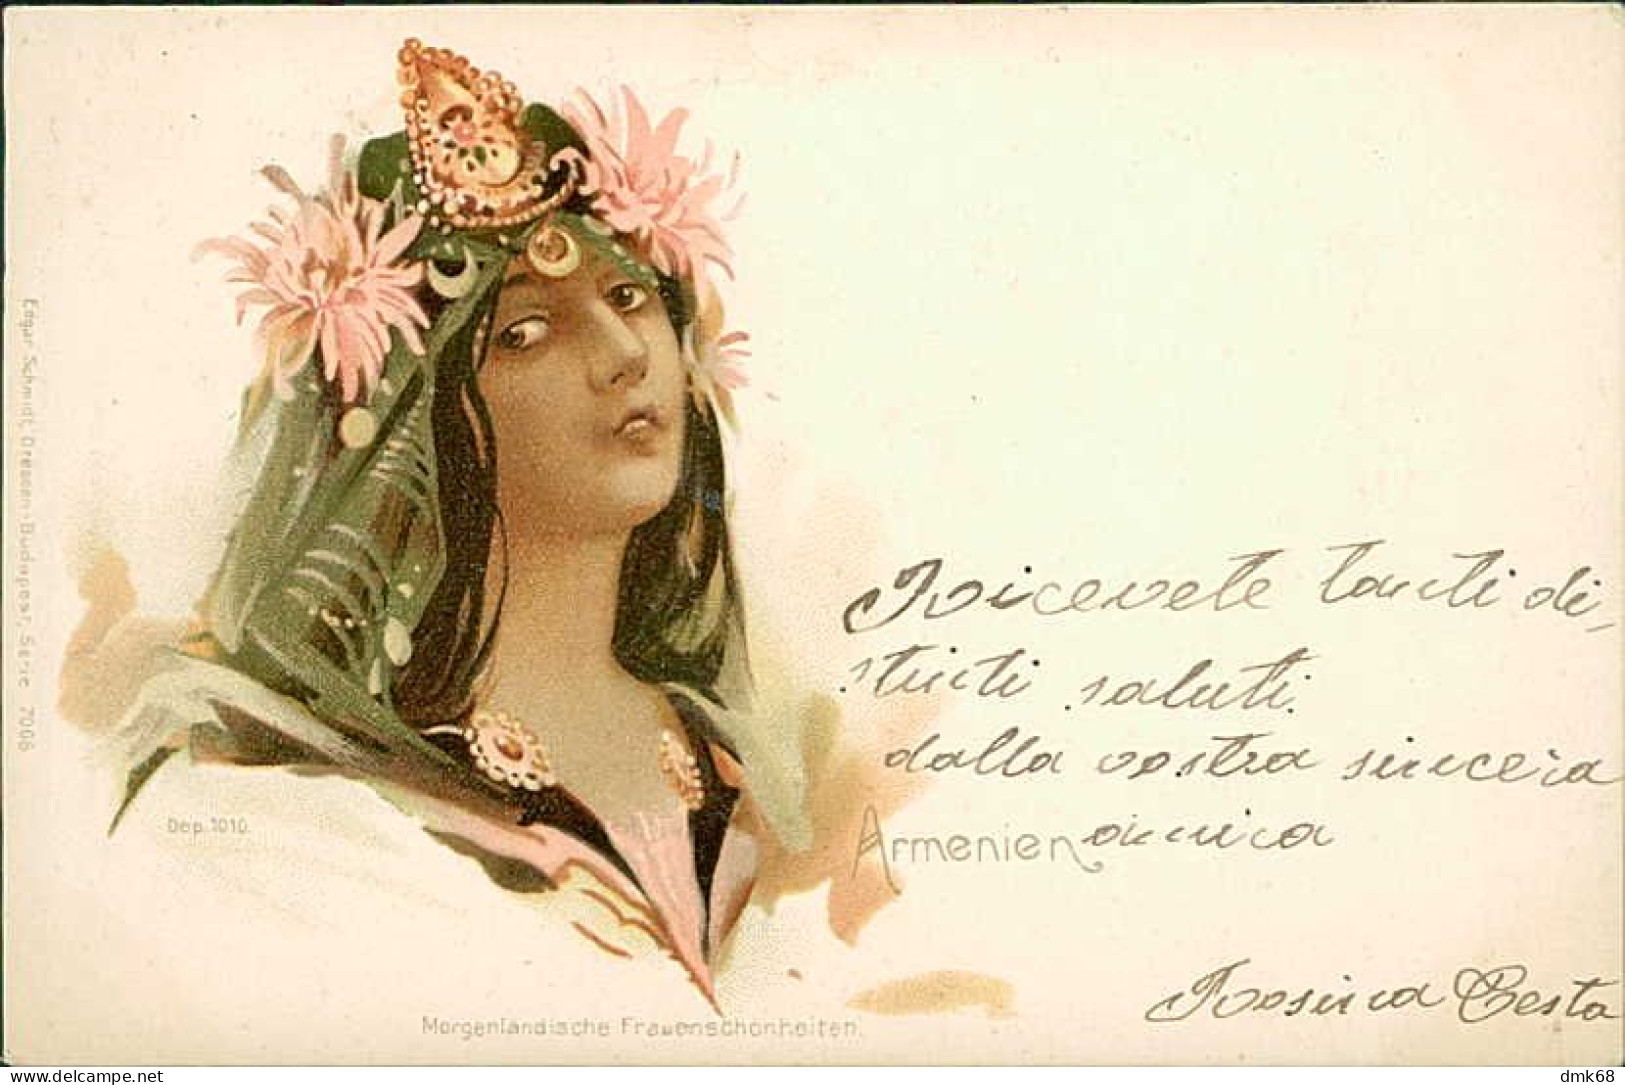 ARMENIA - ARMENIEN - ORIENTAL FEMALE BEAUTY - EDIT. EDGAR SCHMITT - MAILED 1900 (18169) - Arménie